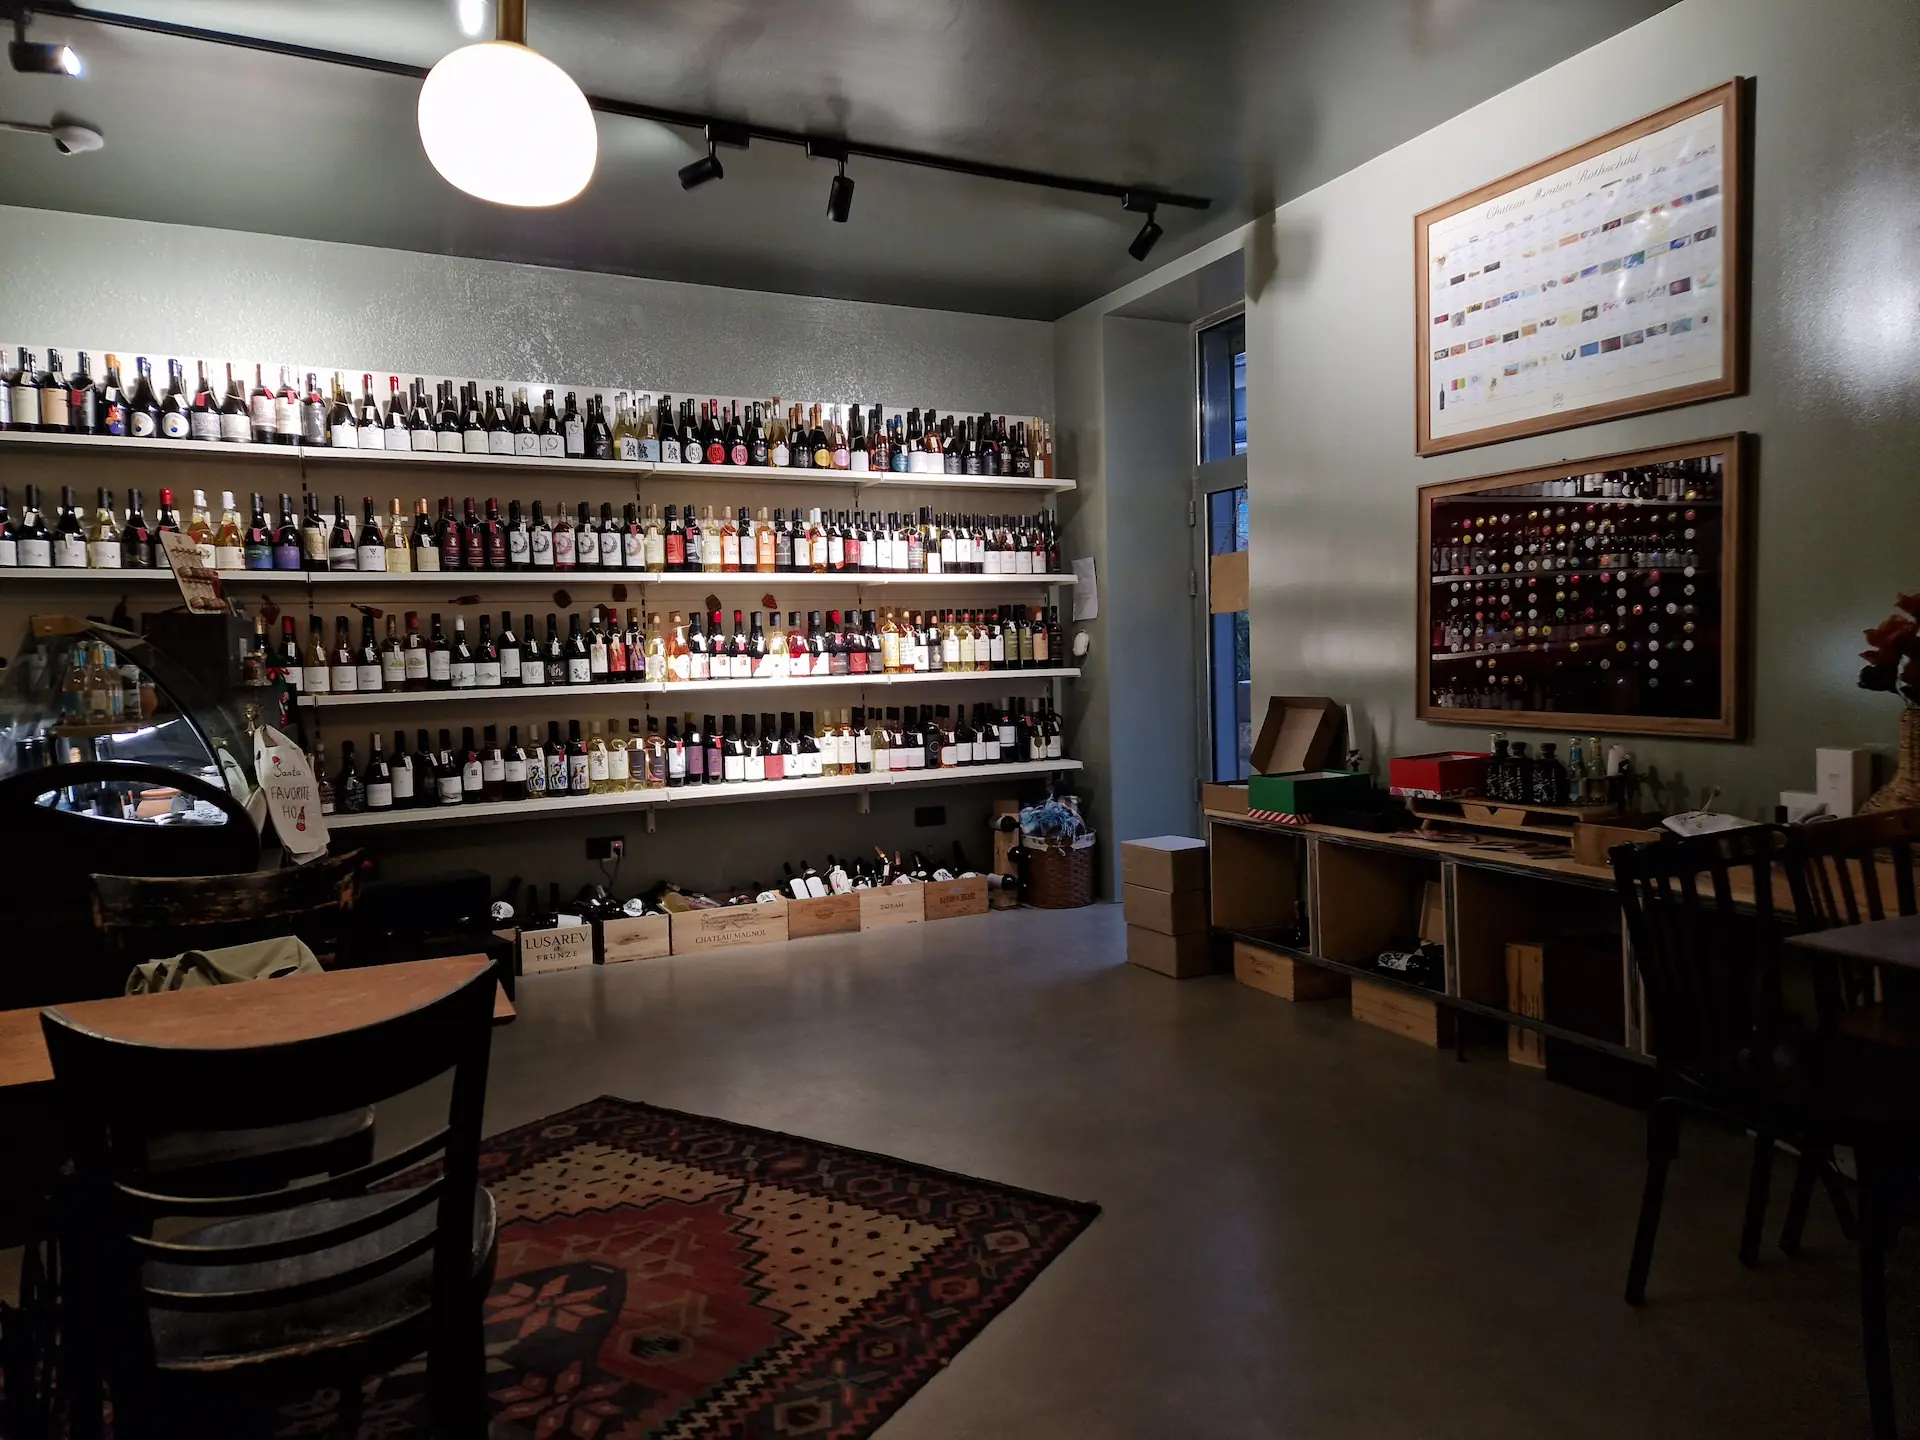 Entrée du bar à vin, un mur entier est rempli de bouteilles au fond de la pièce.